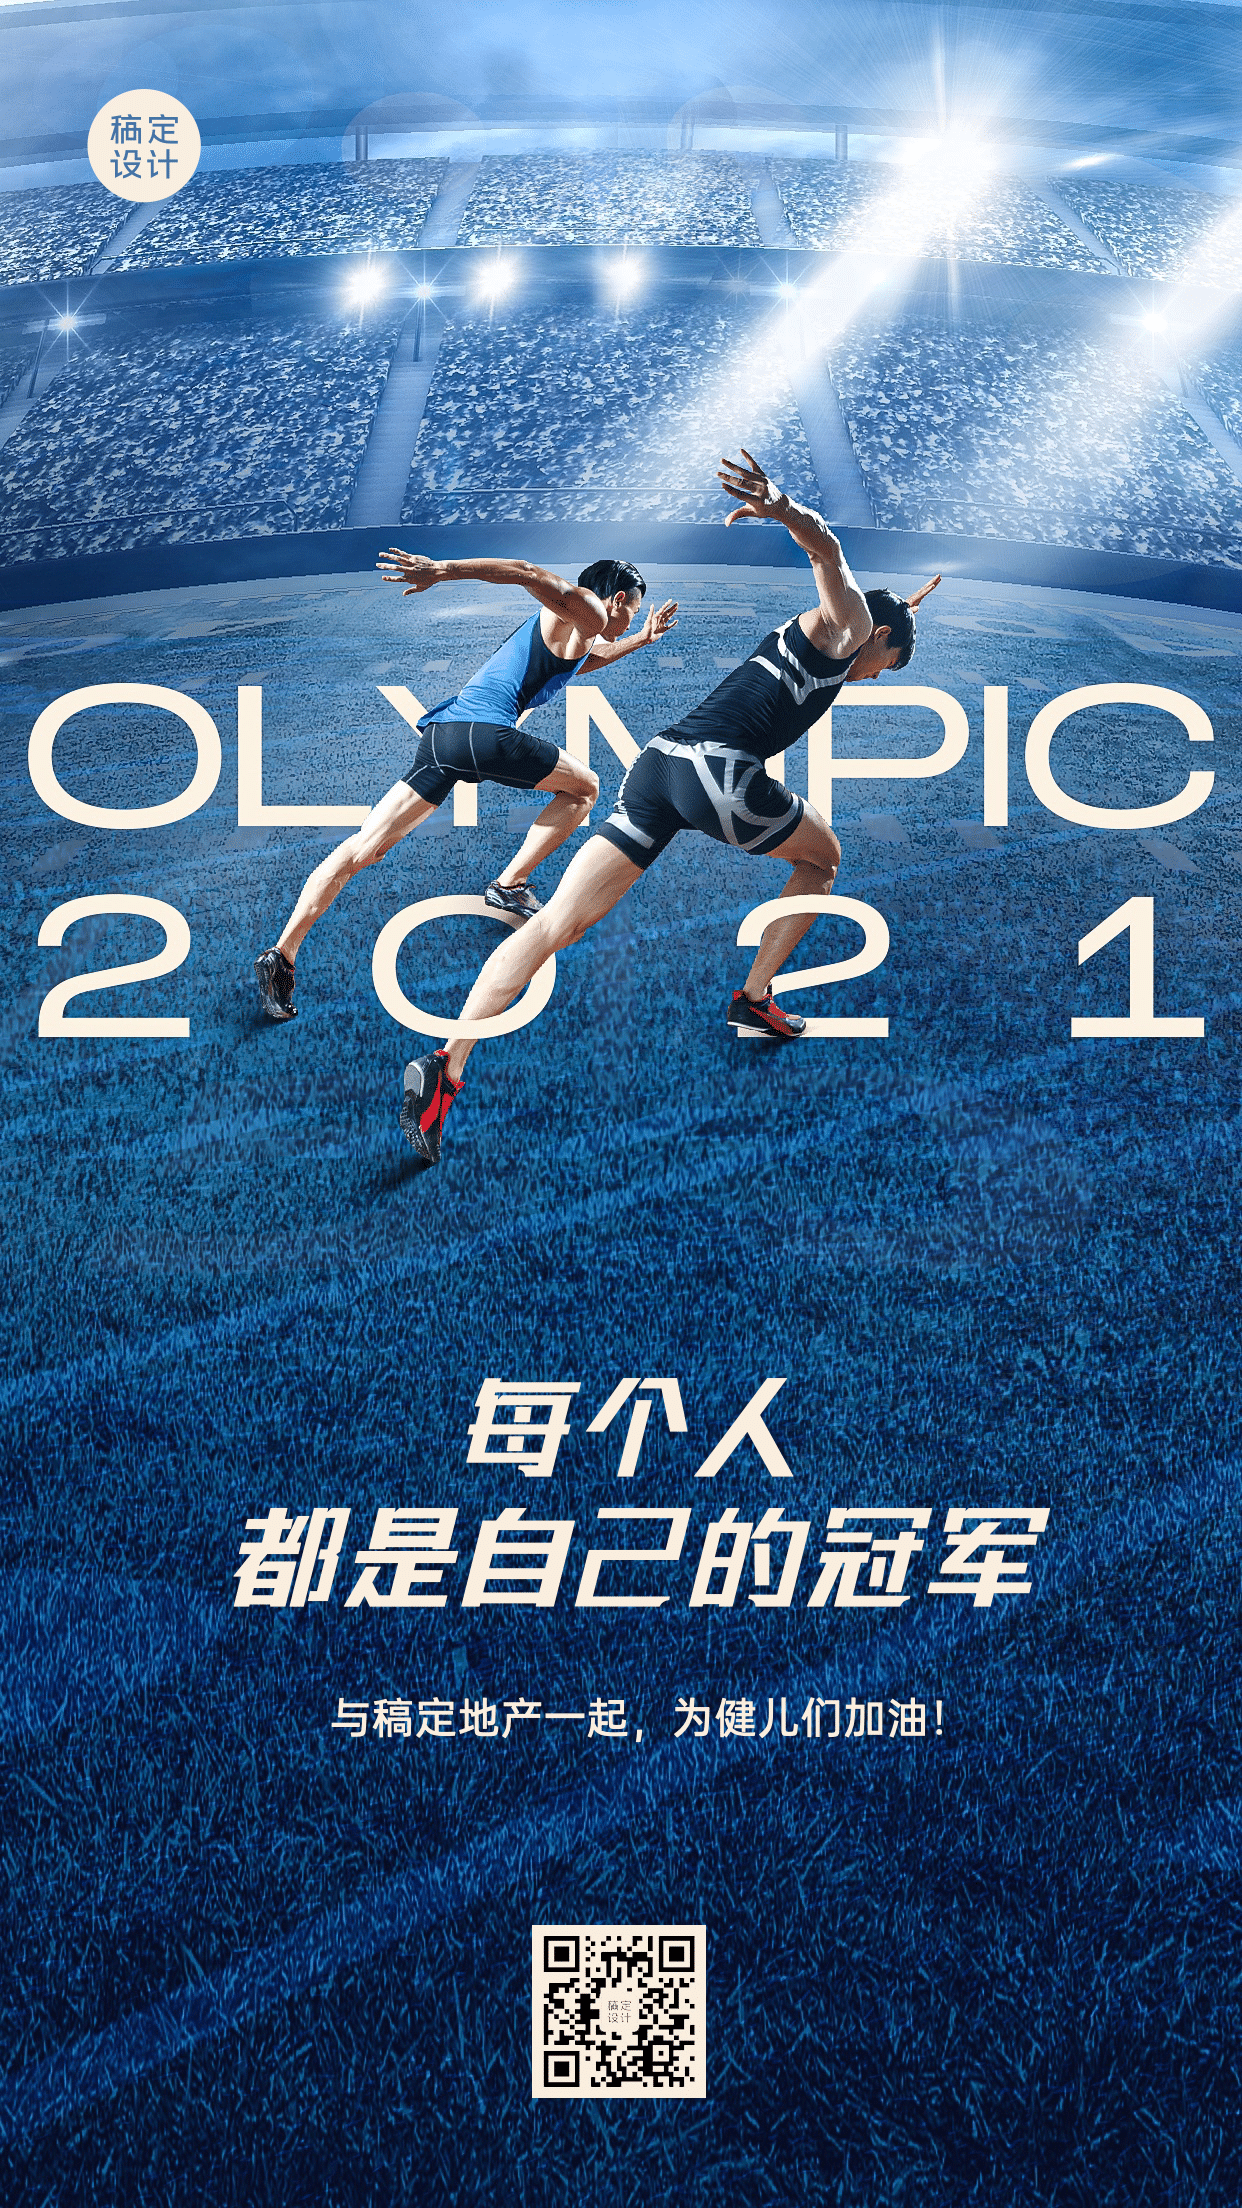 房地产东京奥运会加油励志实景海报